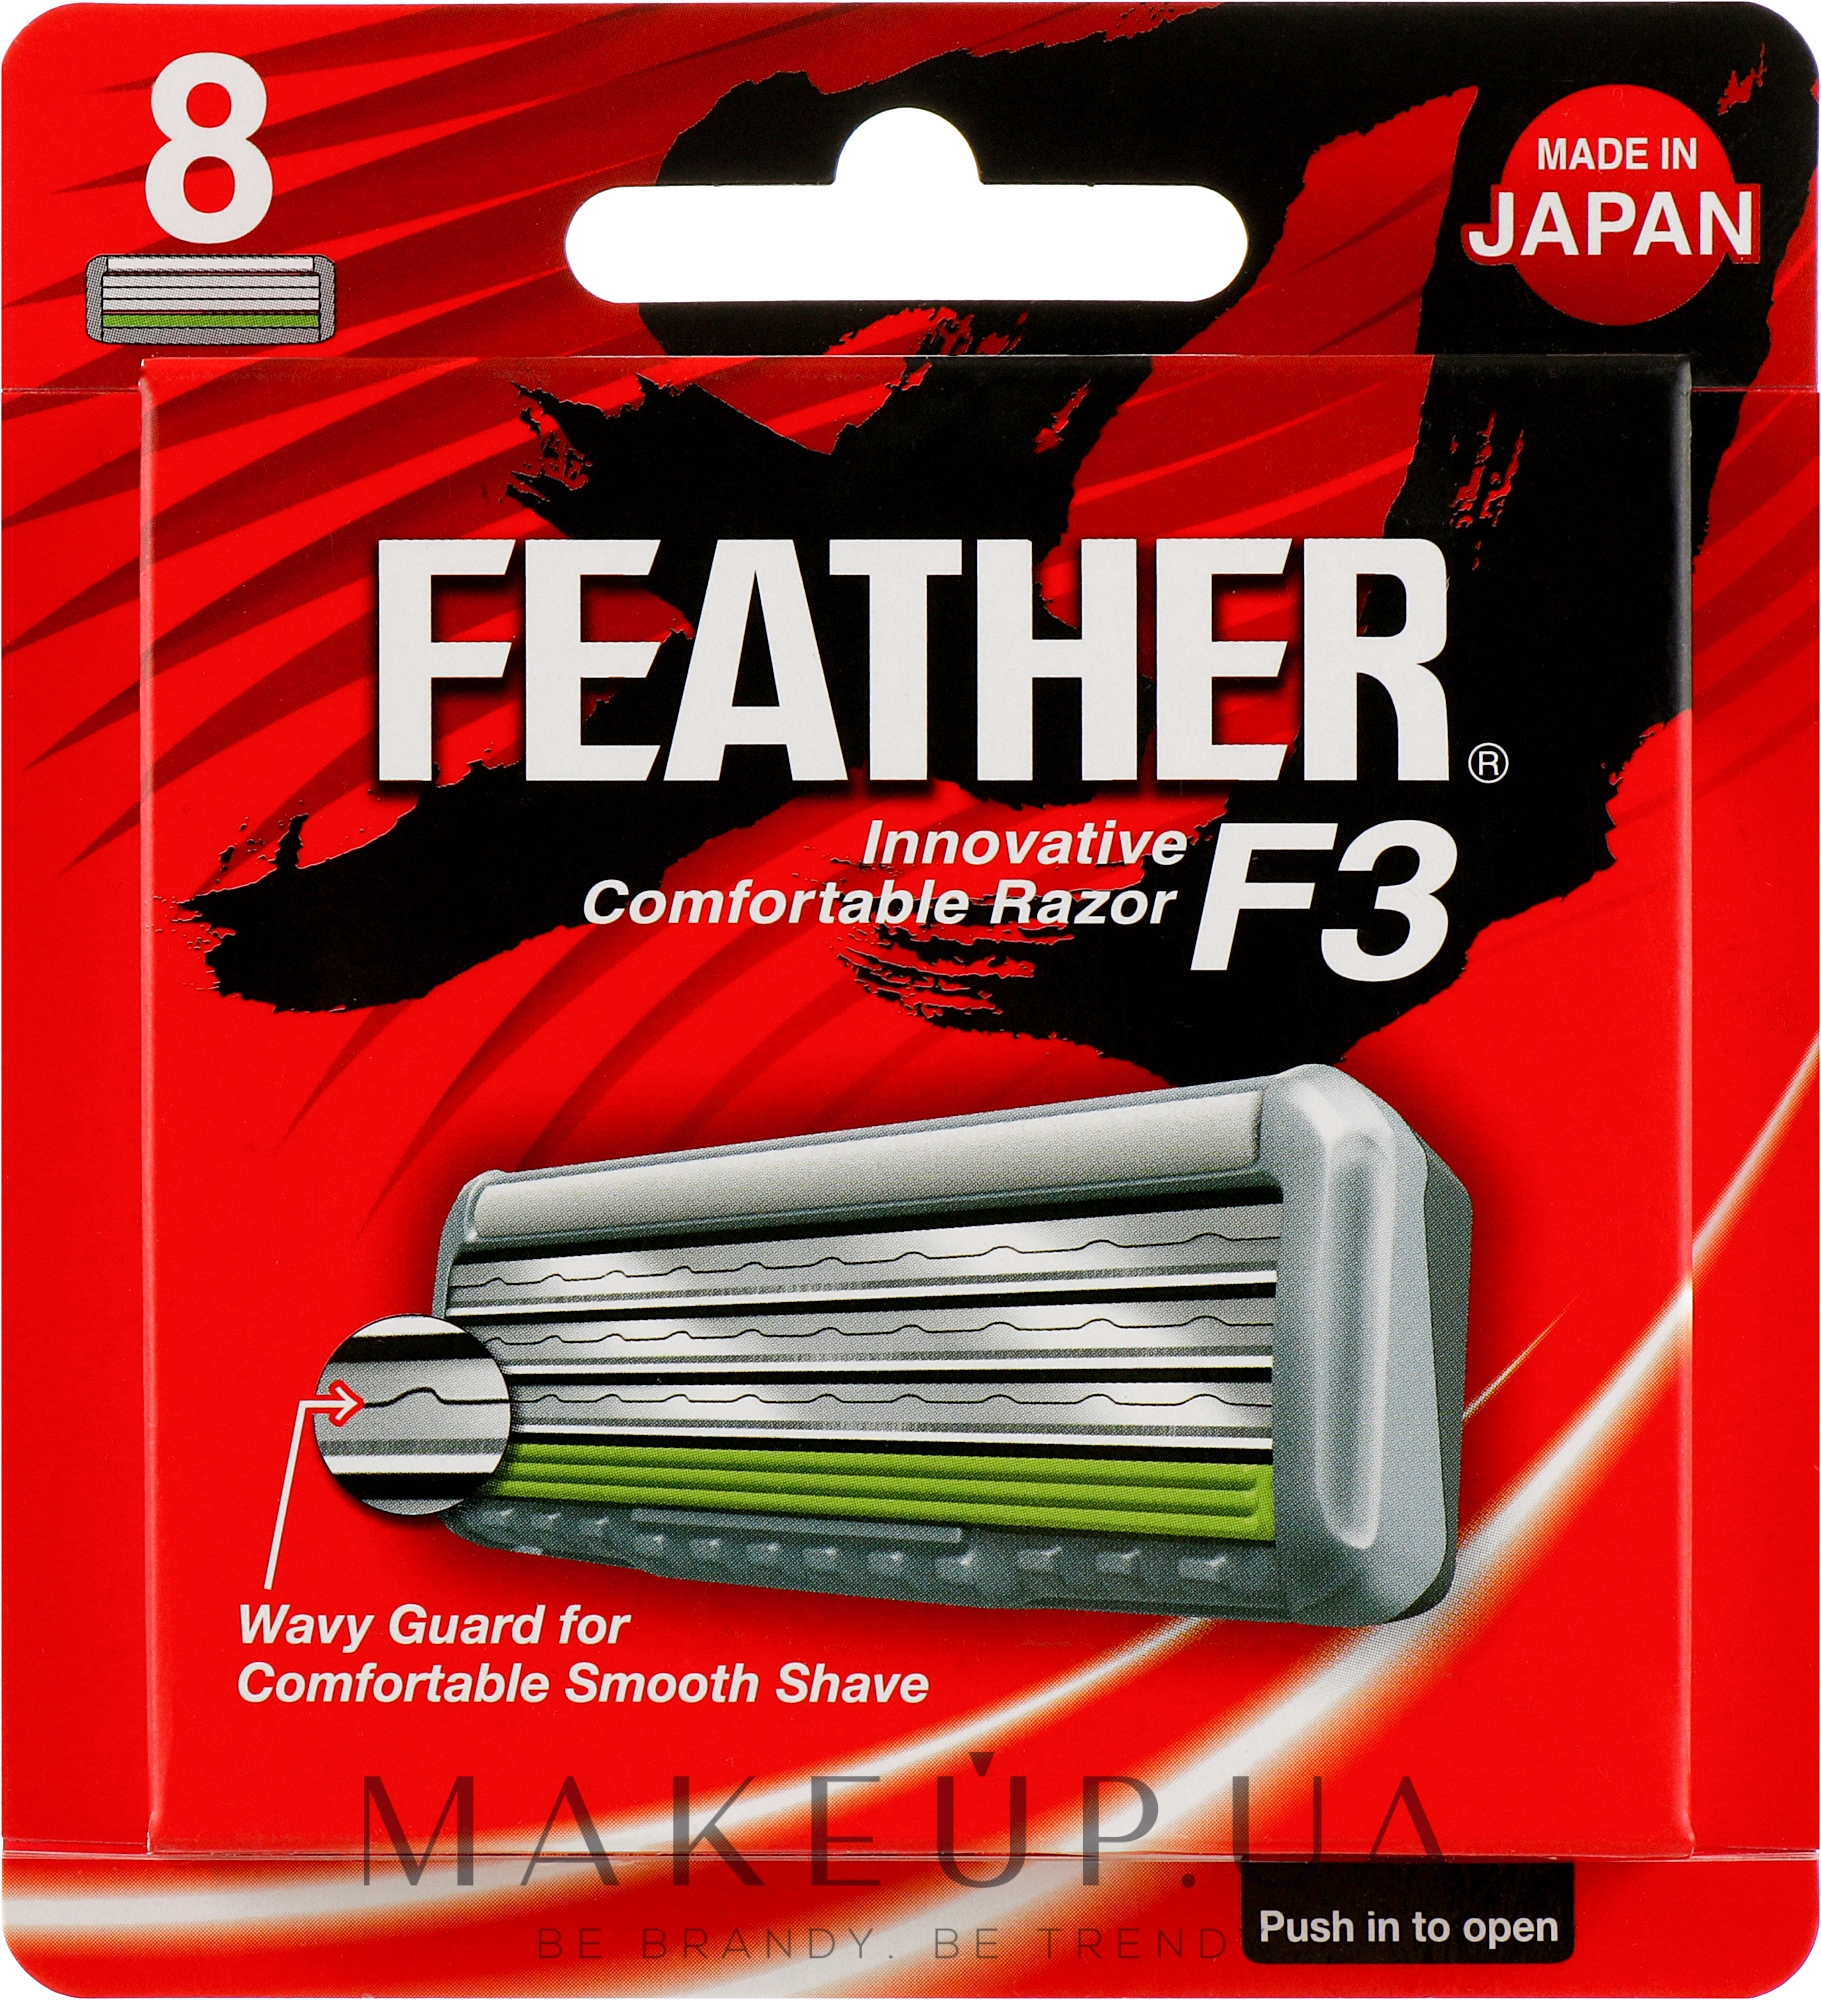 Сменные кассеты с тройным лезвием "F3", 8шт. - Feather F3 Triple Blade 8 Cartridges — фото 8шт